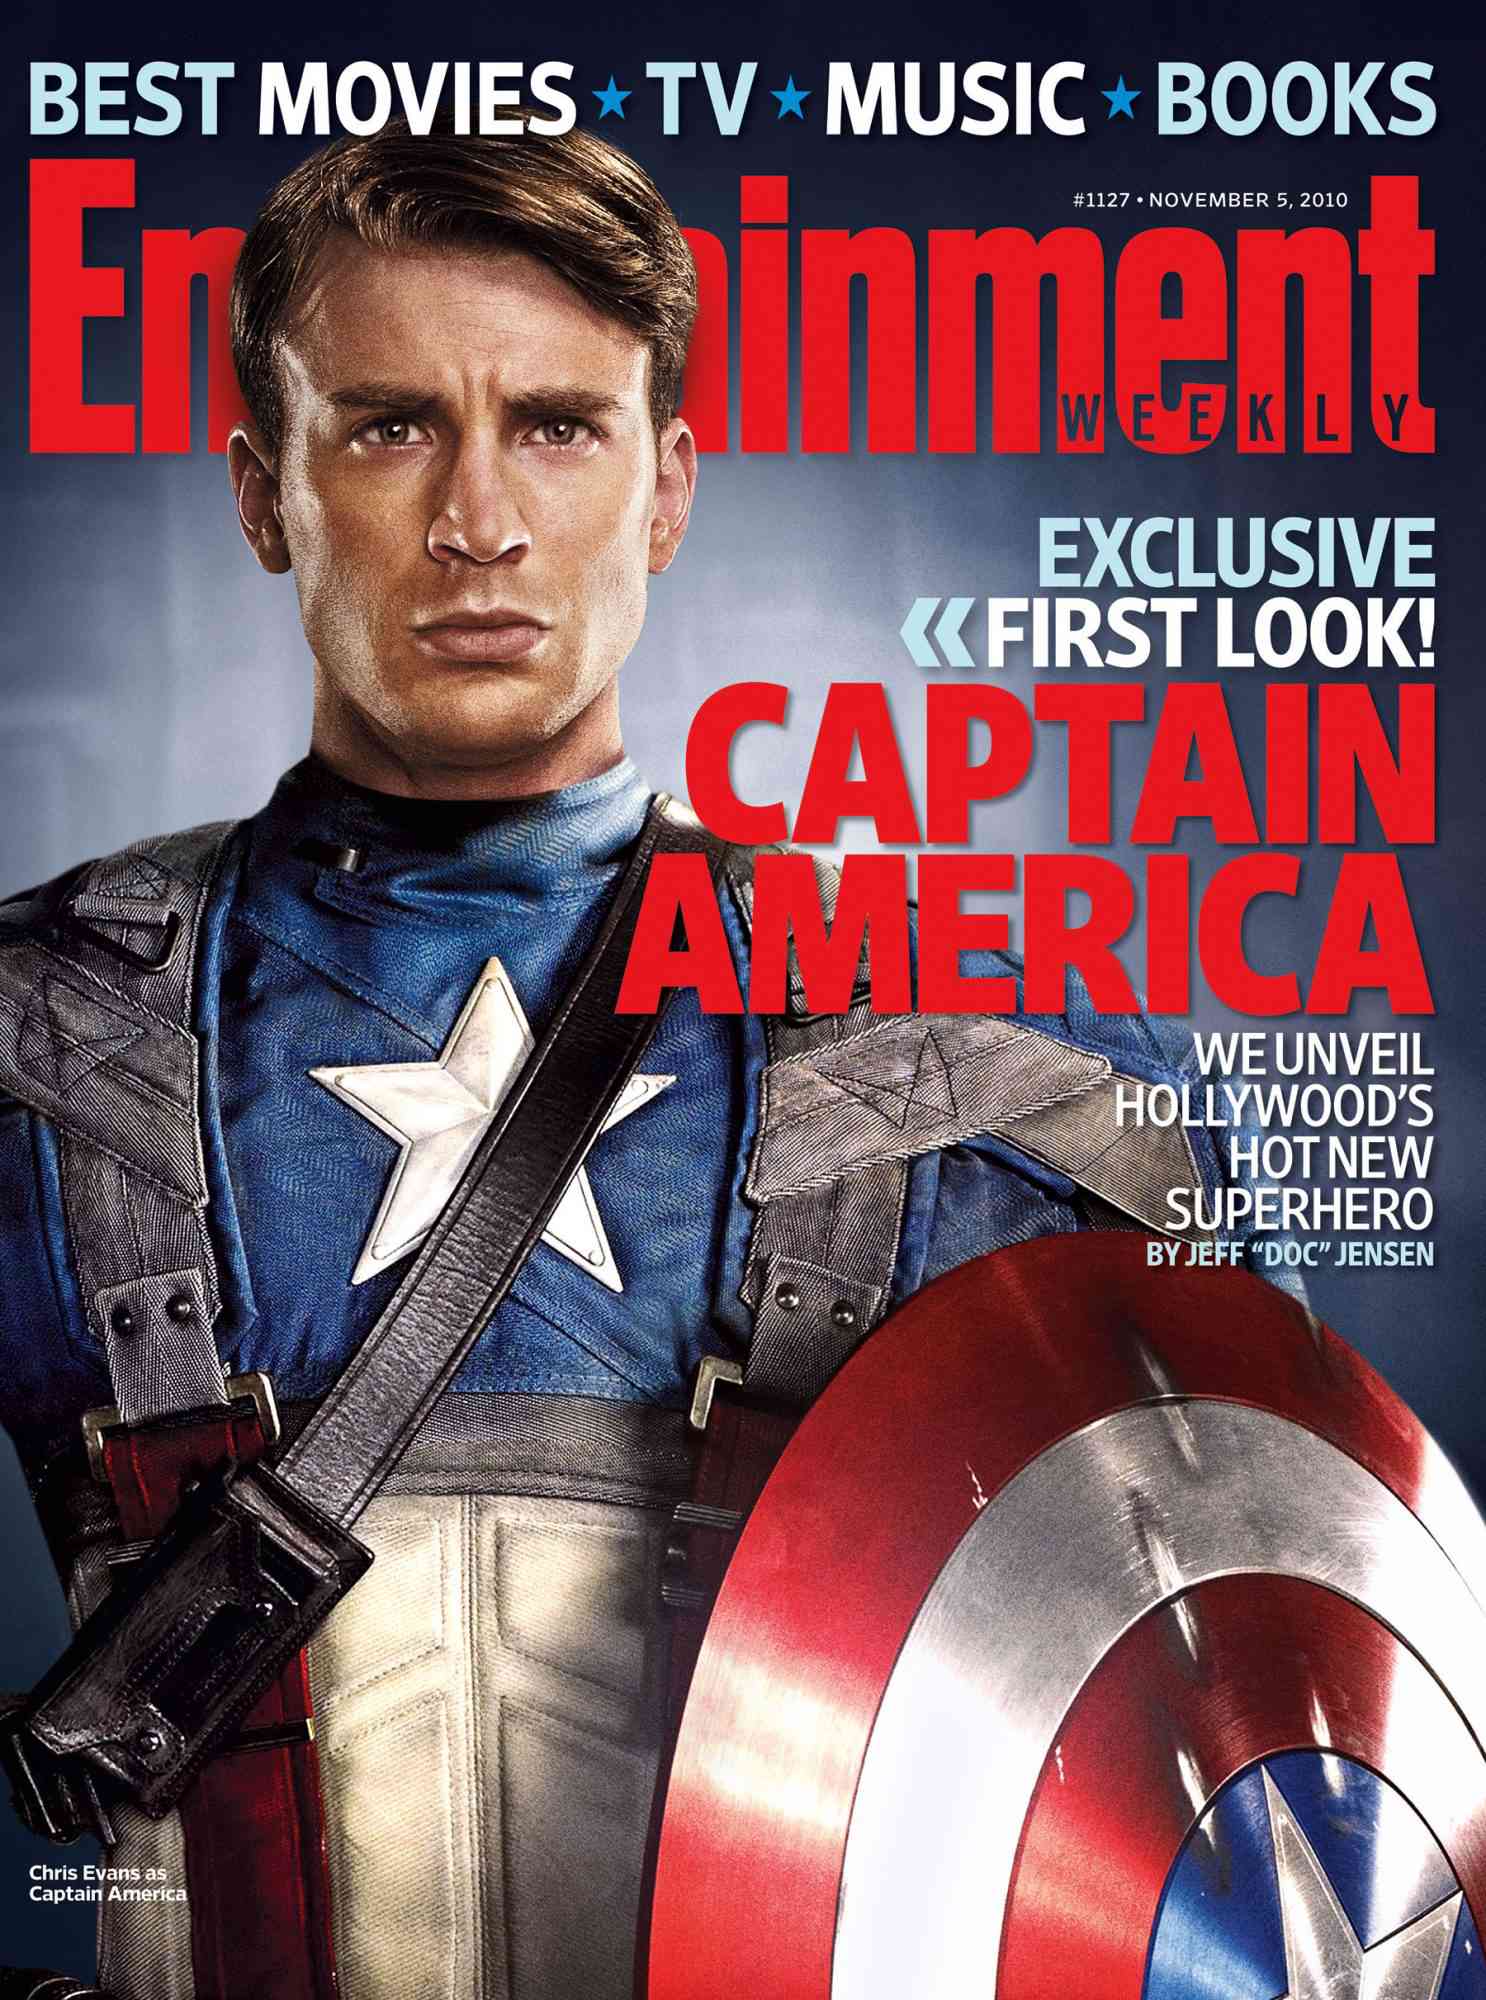 Captain America The First Avenger - Chris Evans v3 2011 Movie Poster 24x36 